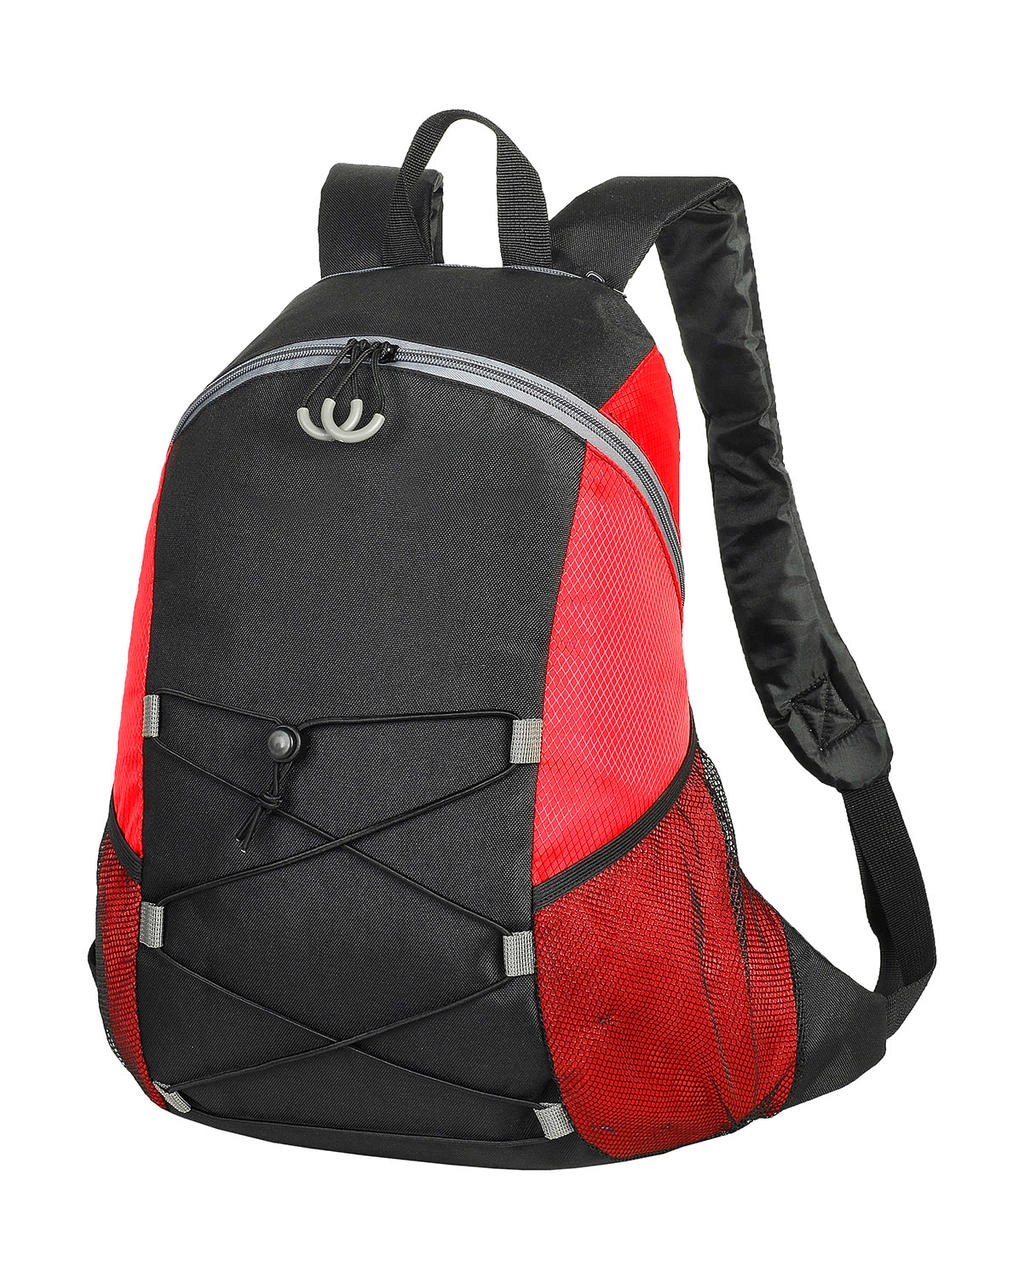 Chester Backpack zum Besticken und Bedrucken in der Farbe Black/Red mit Ihren Logo, Schriftzug oder Motiv.